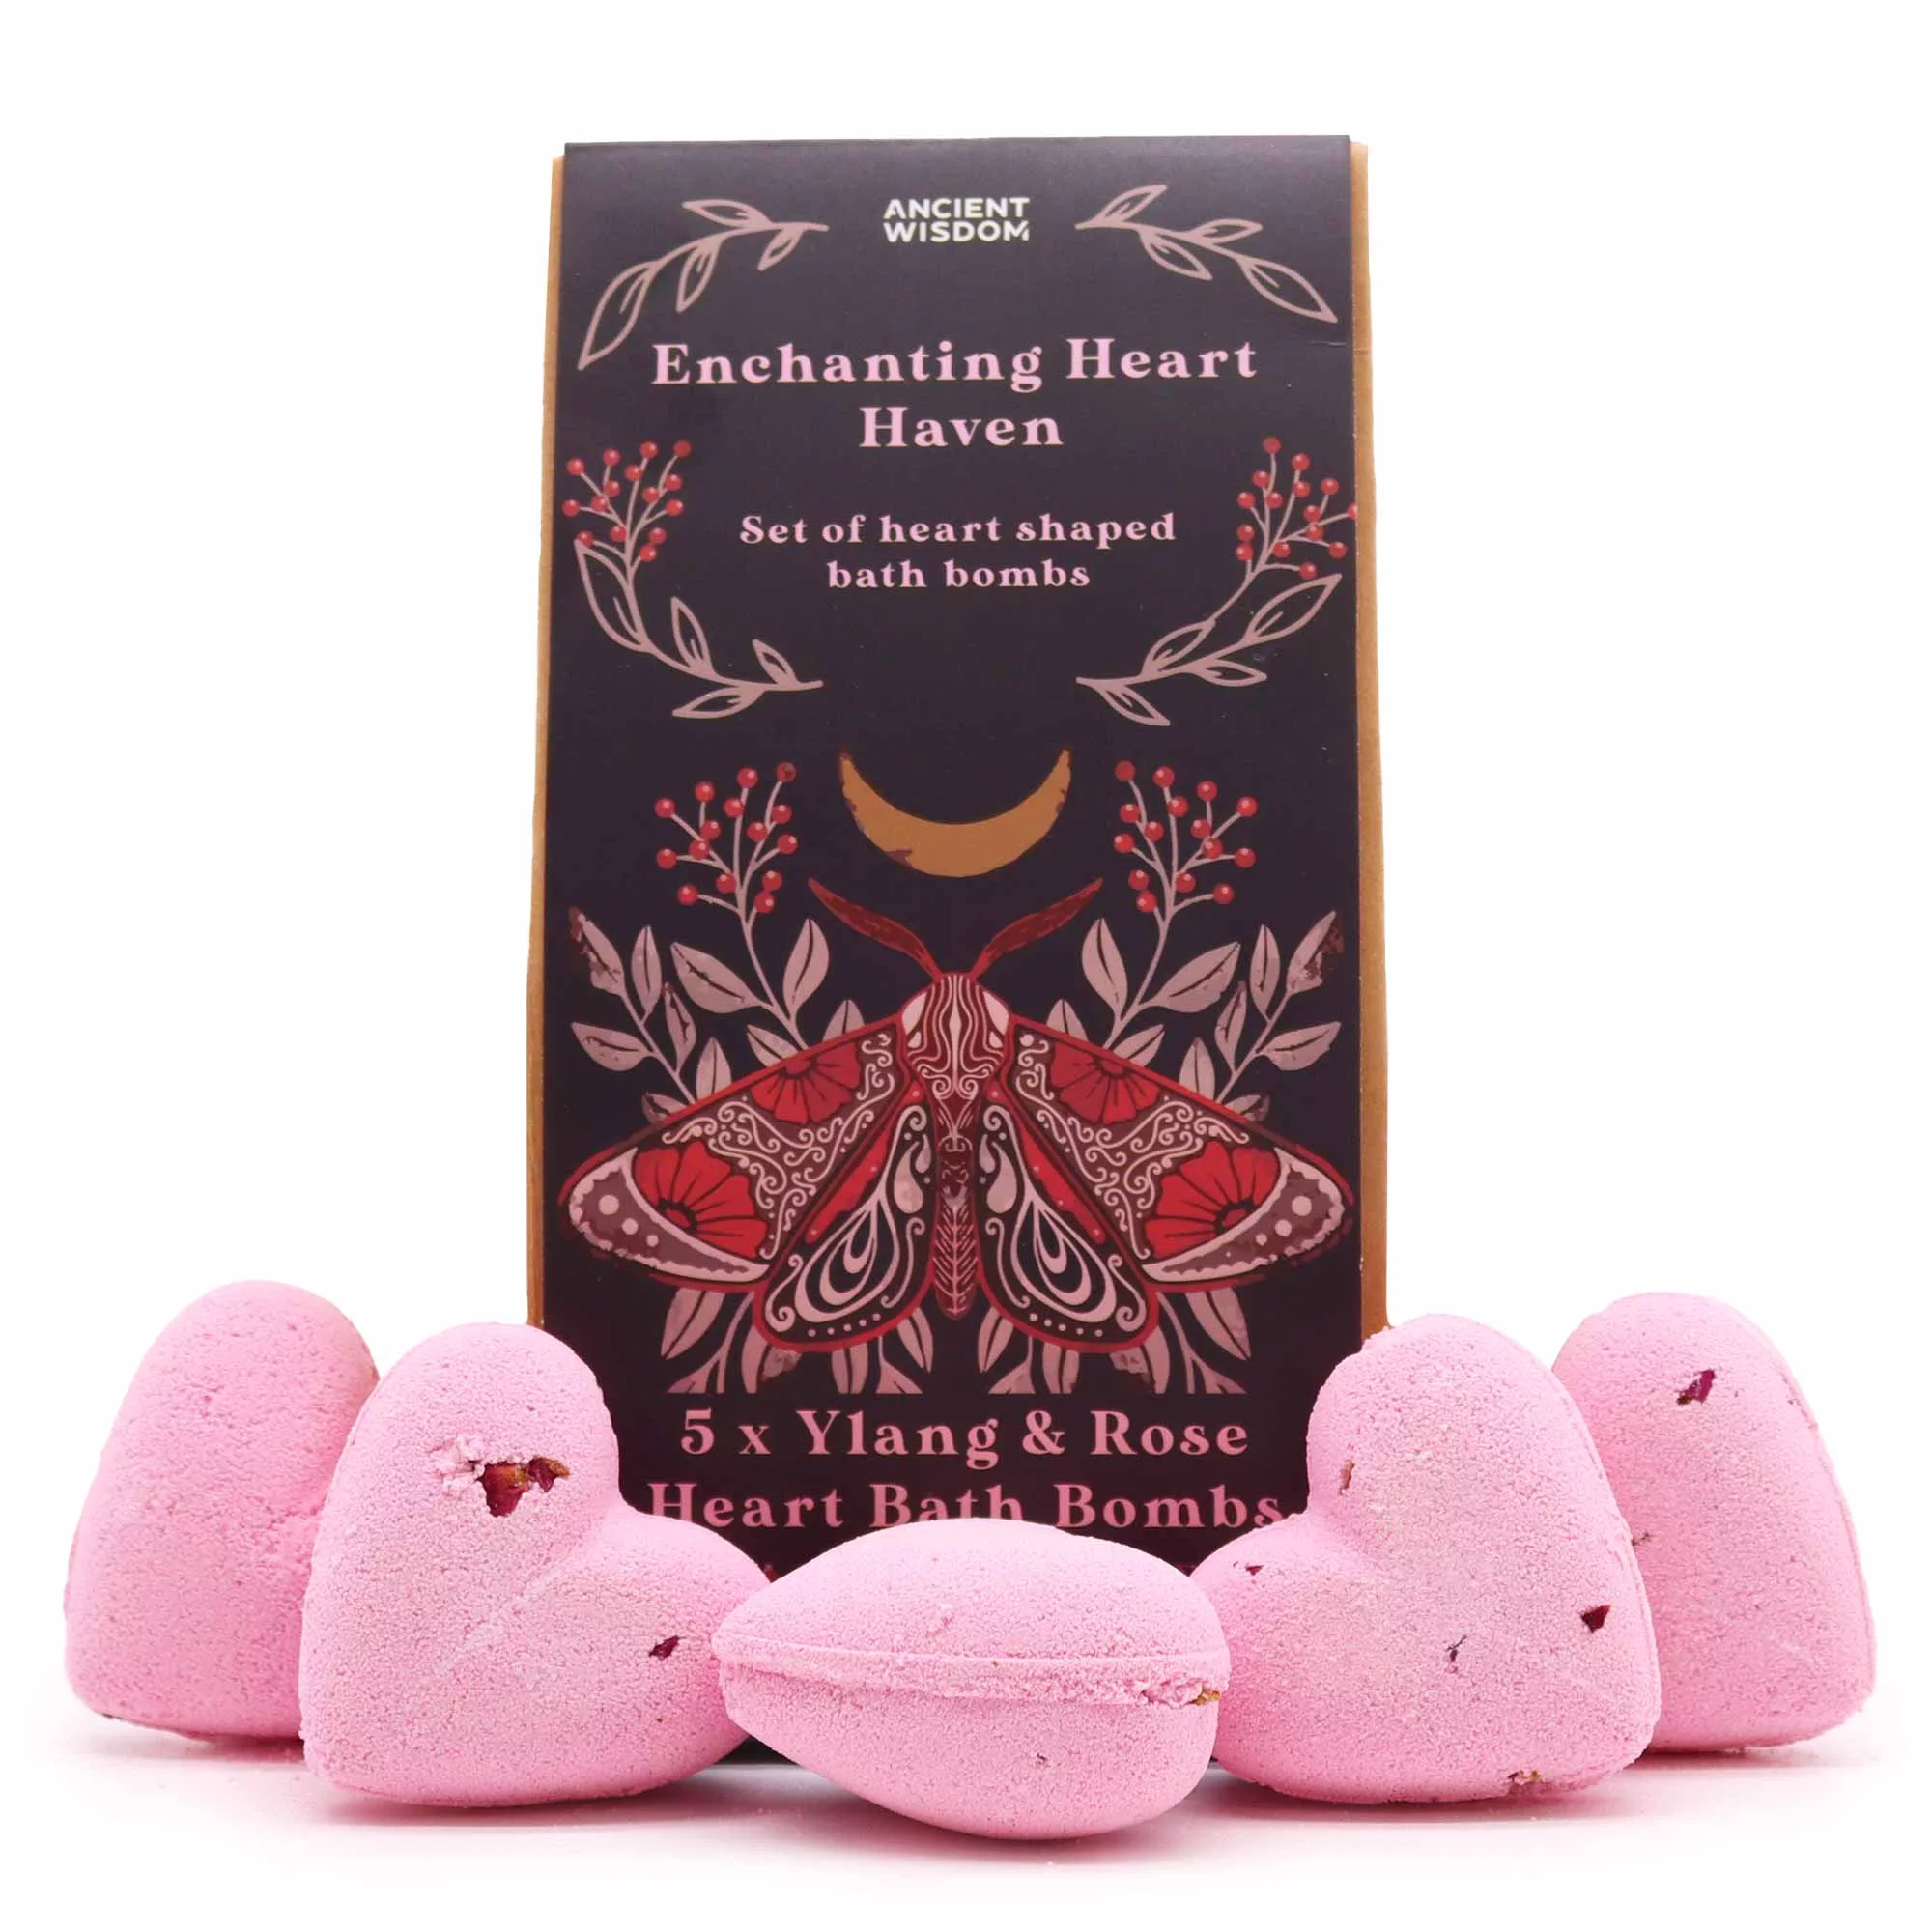 Heart Bath Bombs Gift Sets